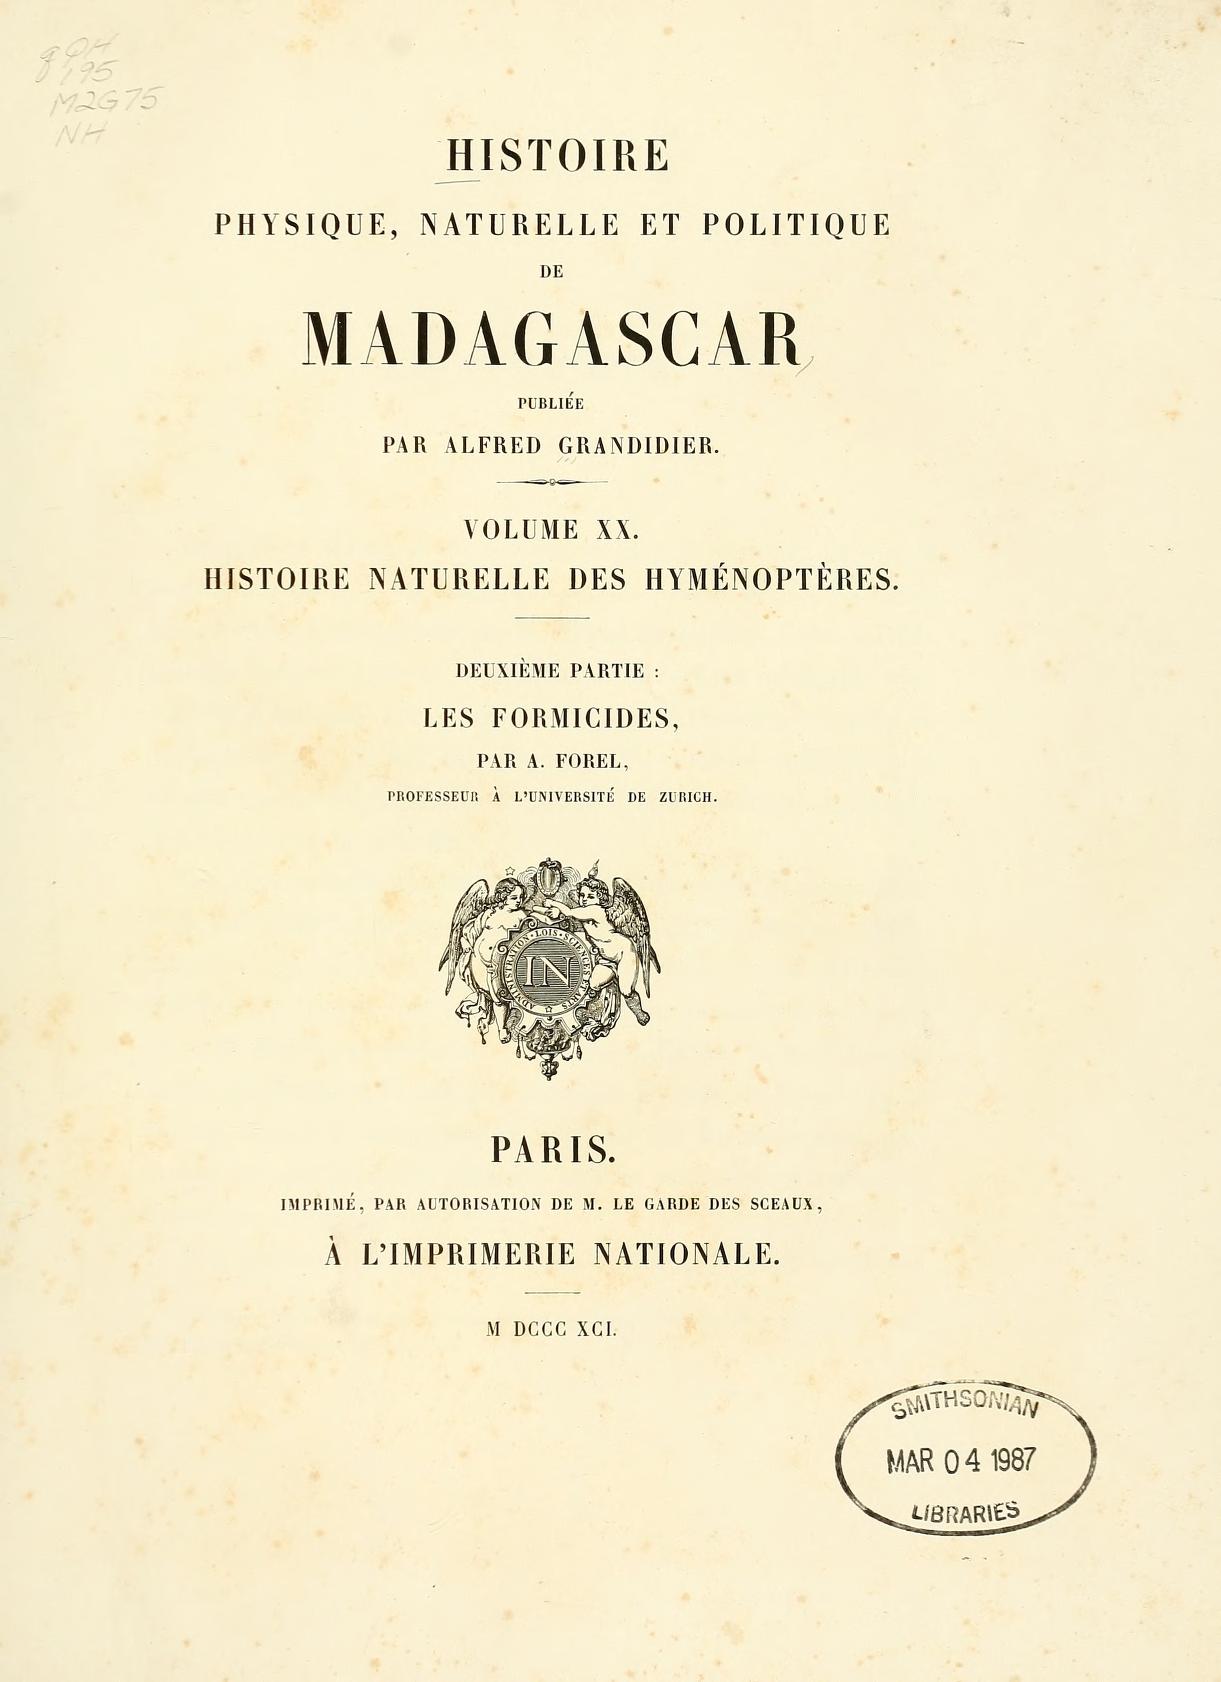 Media type: text; Forel 1891 Description: Histoire naturelle des Hyménoptères. Les Formicides;